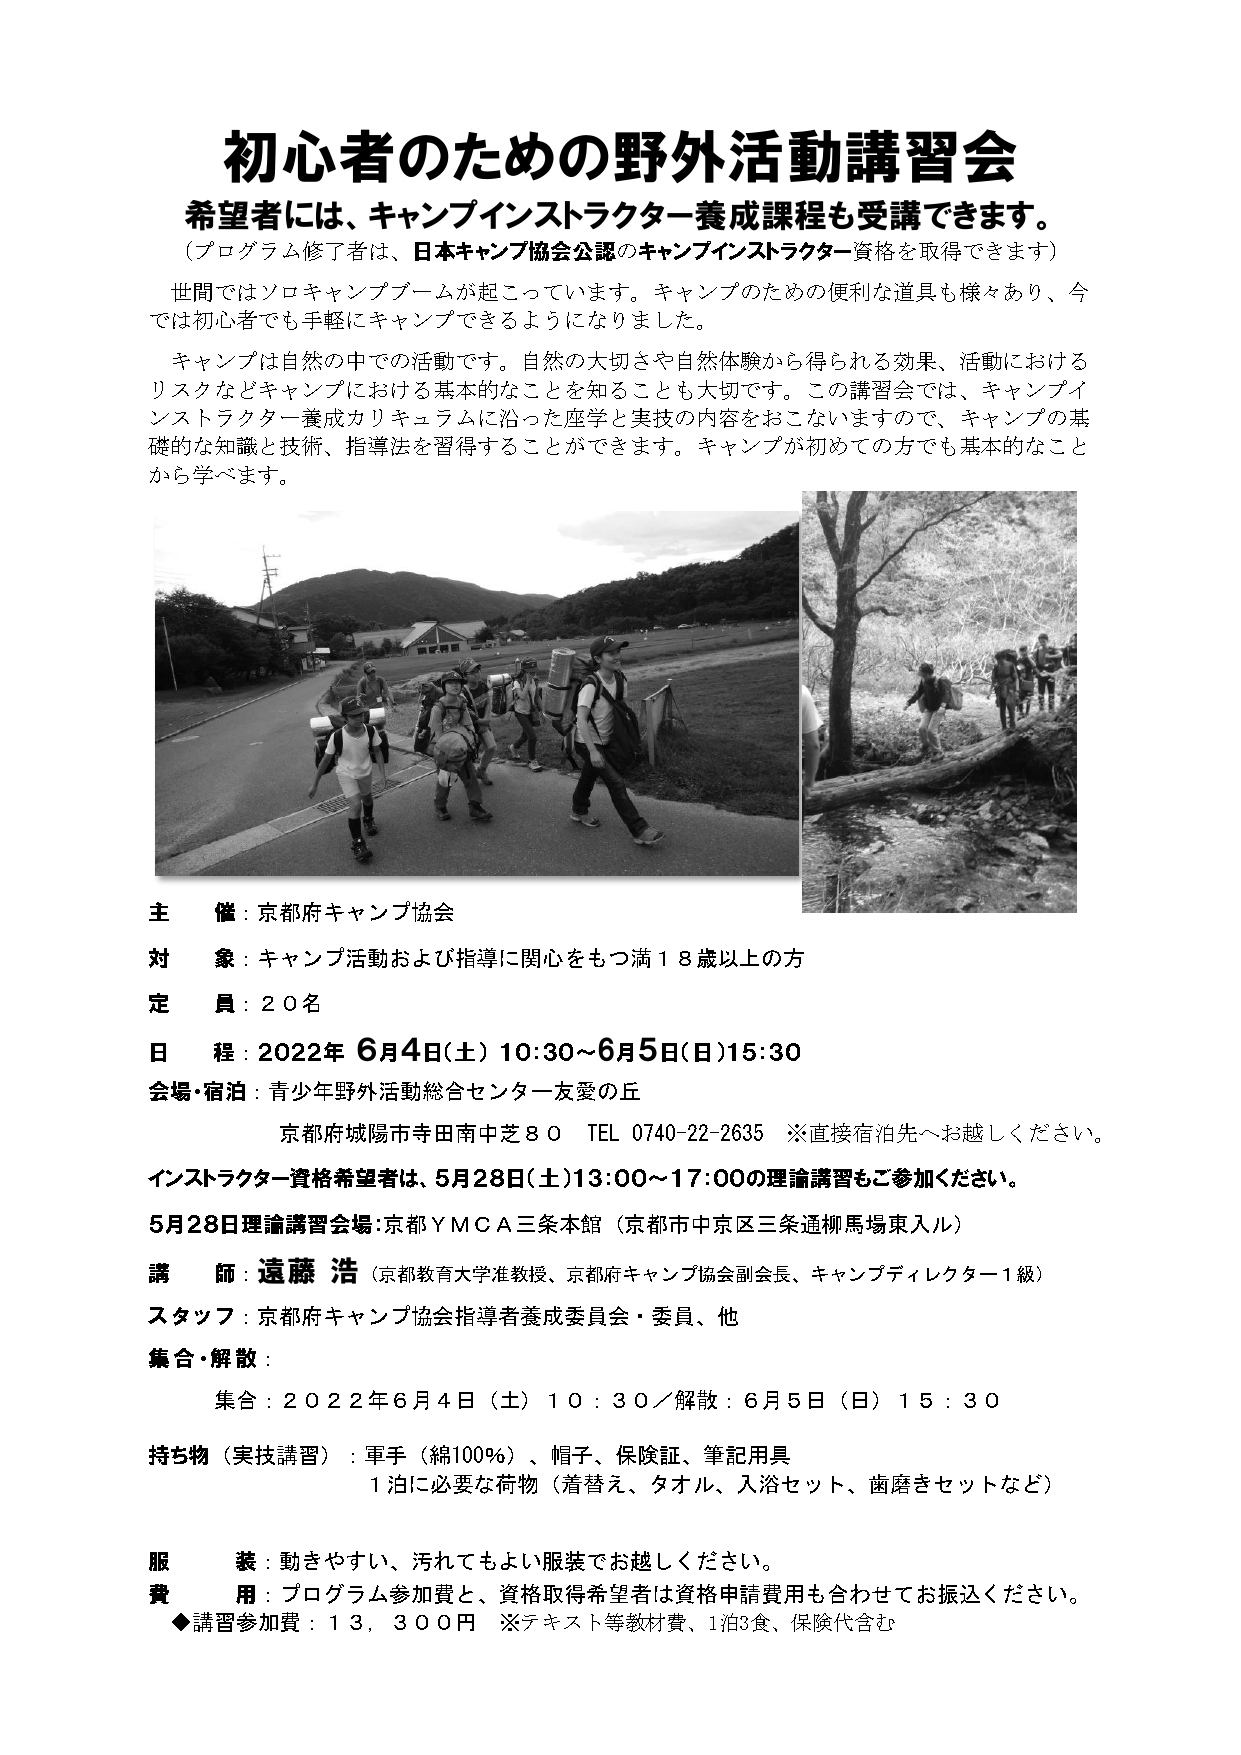 京都：初心者のための野外活動講習会（5/28・6/4～5） @ 京都YMCA三条本館